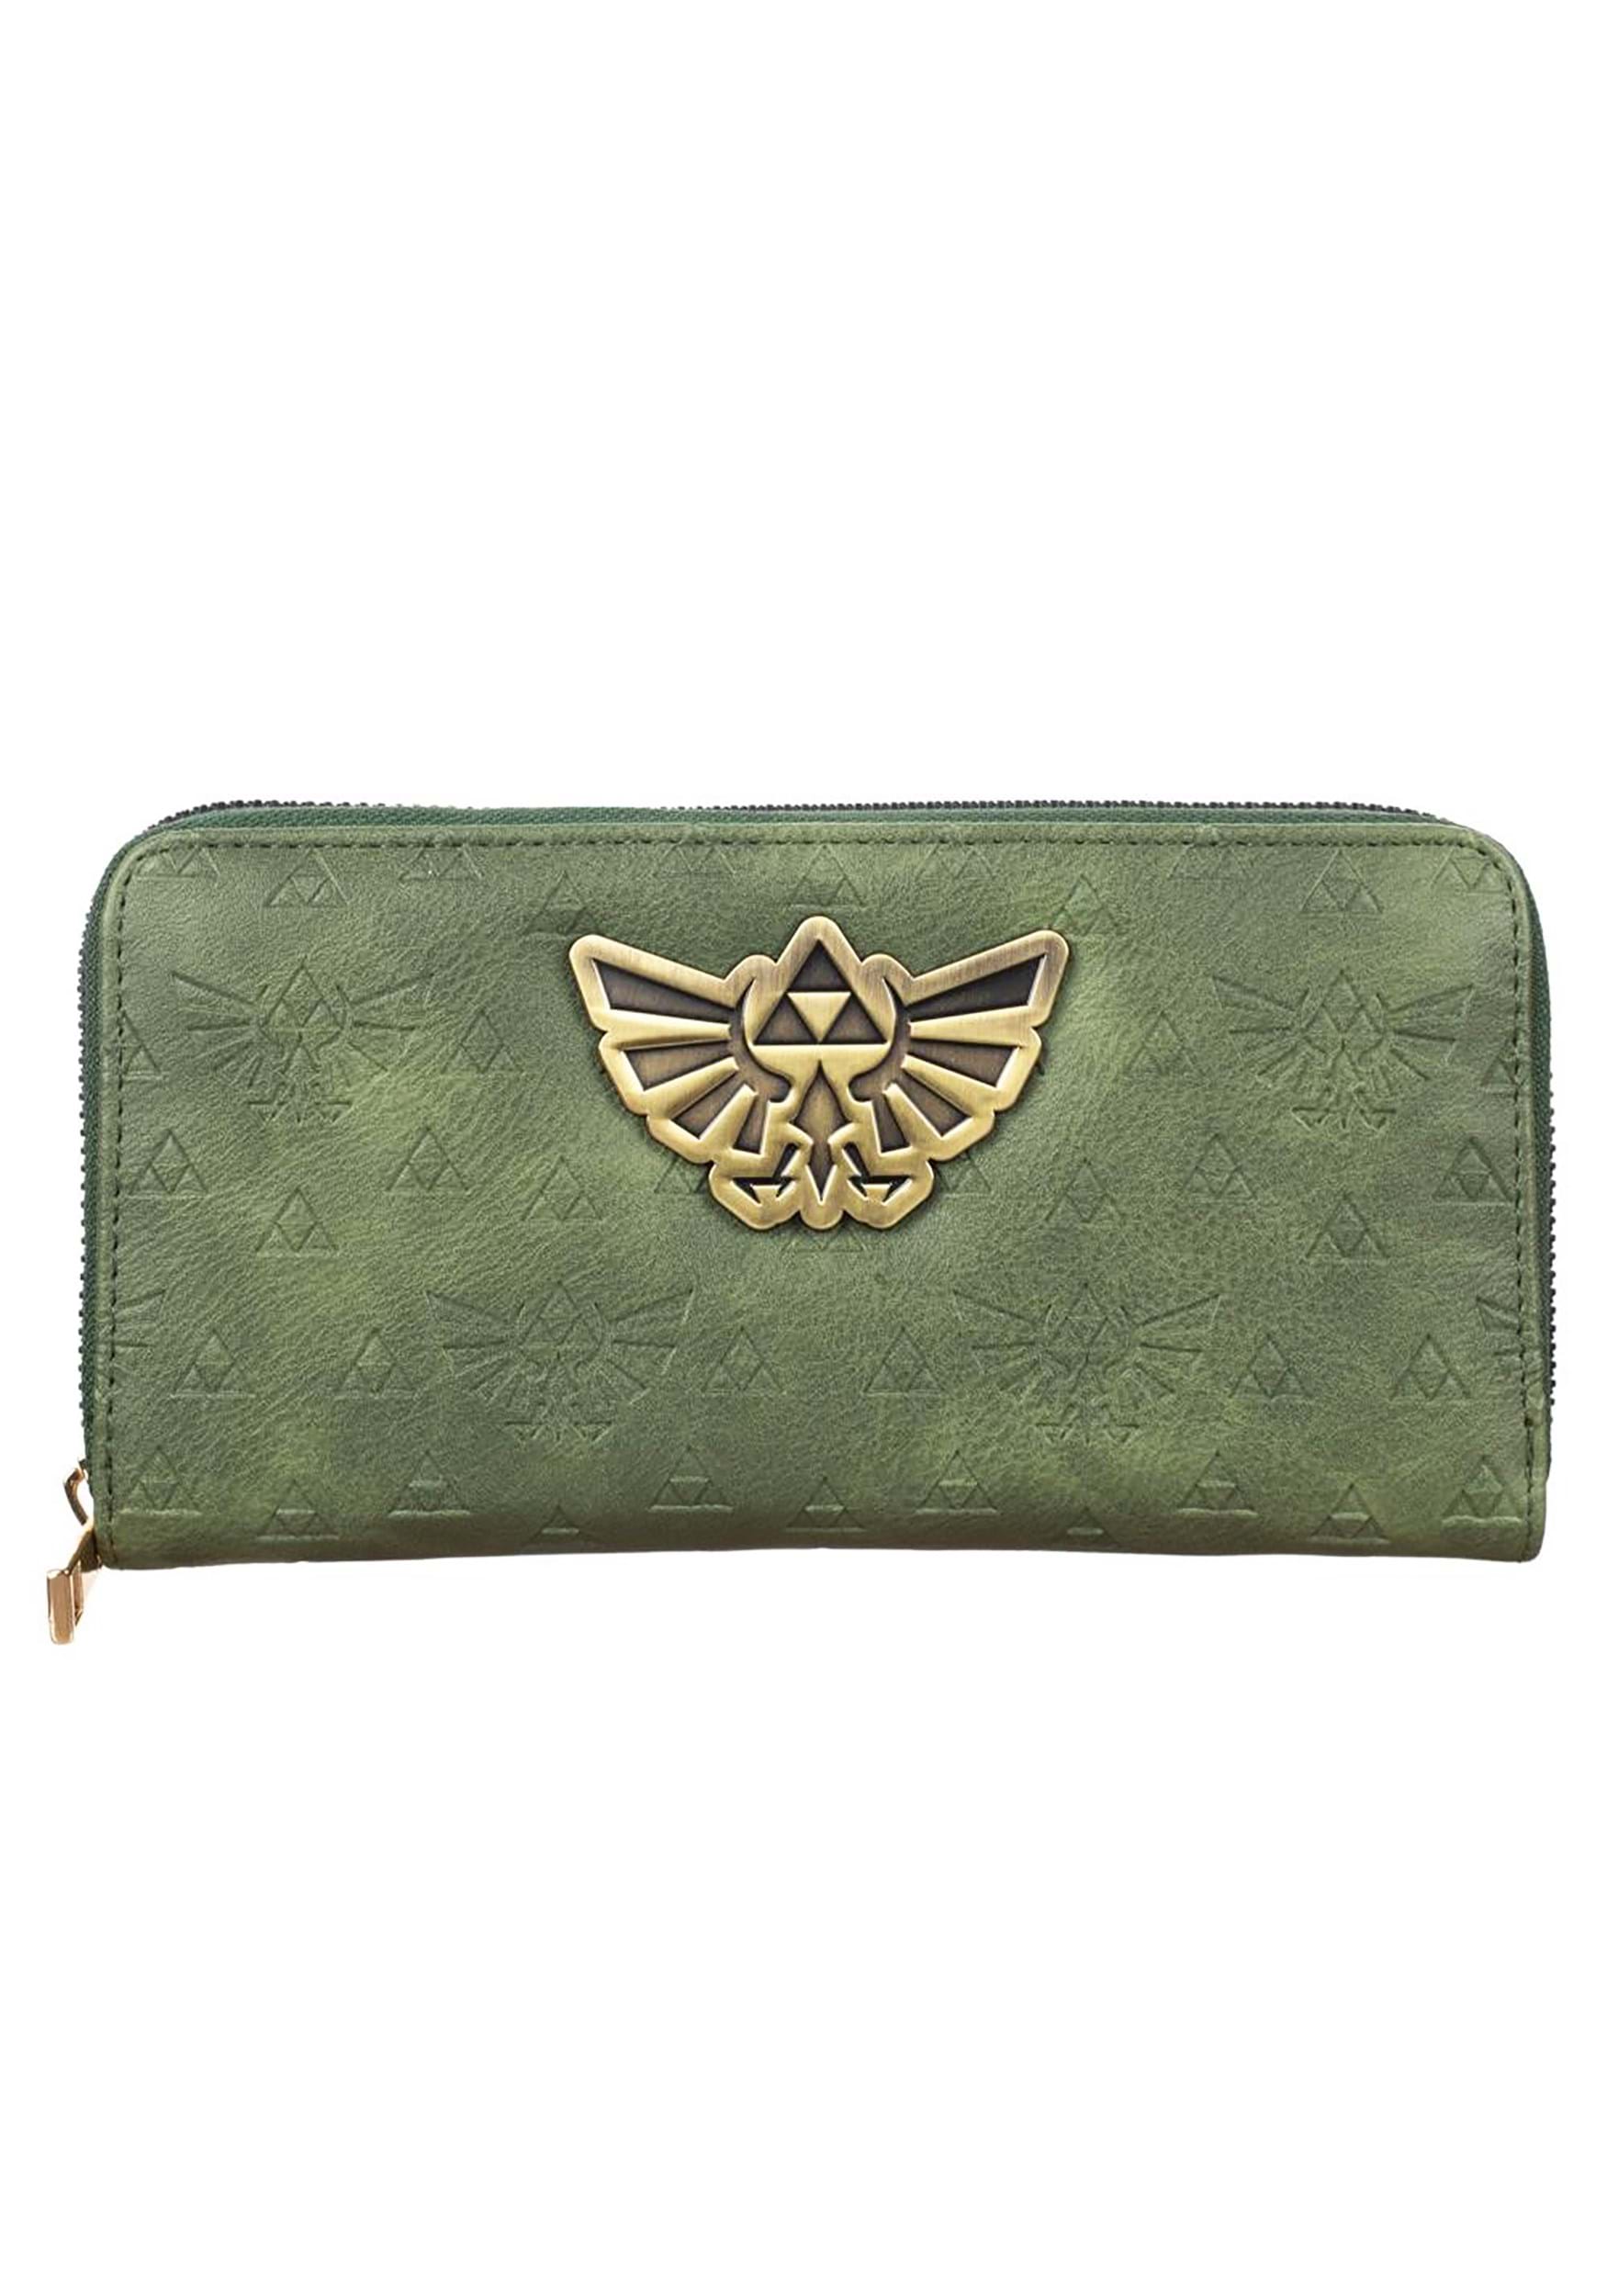 Legend of Zelda Passport Wallet